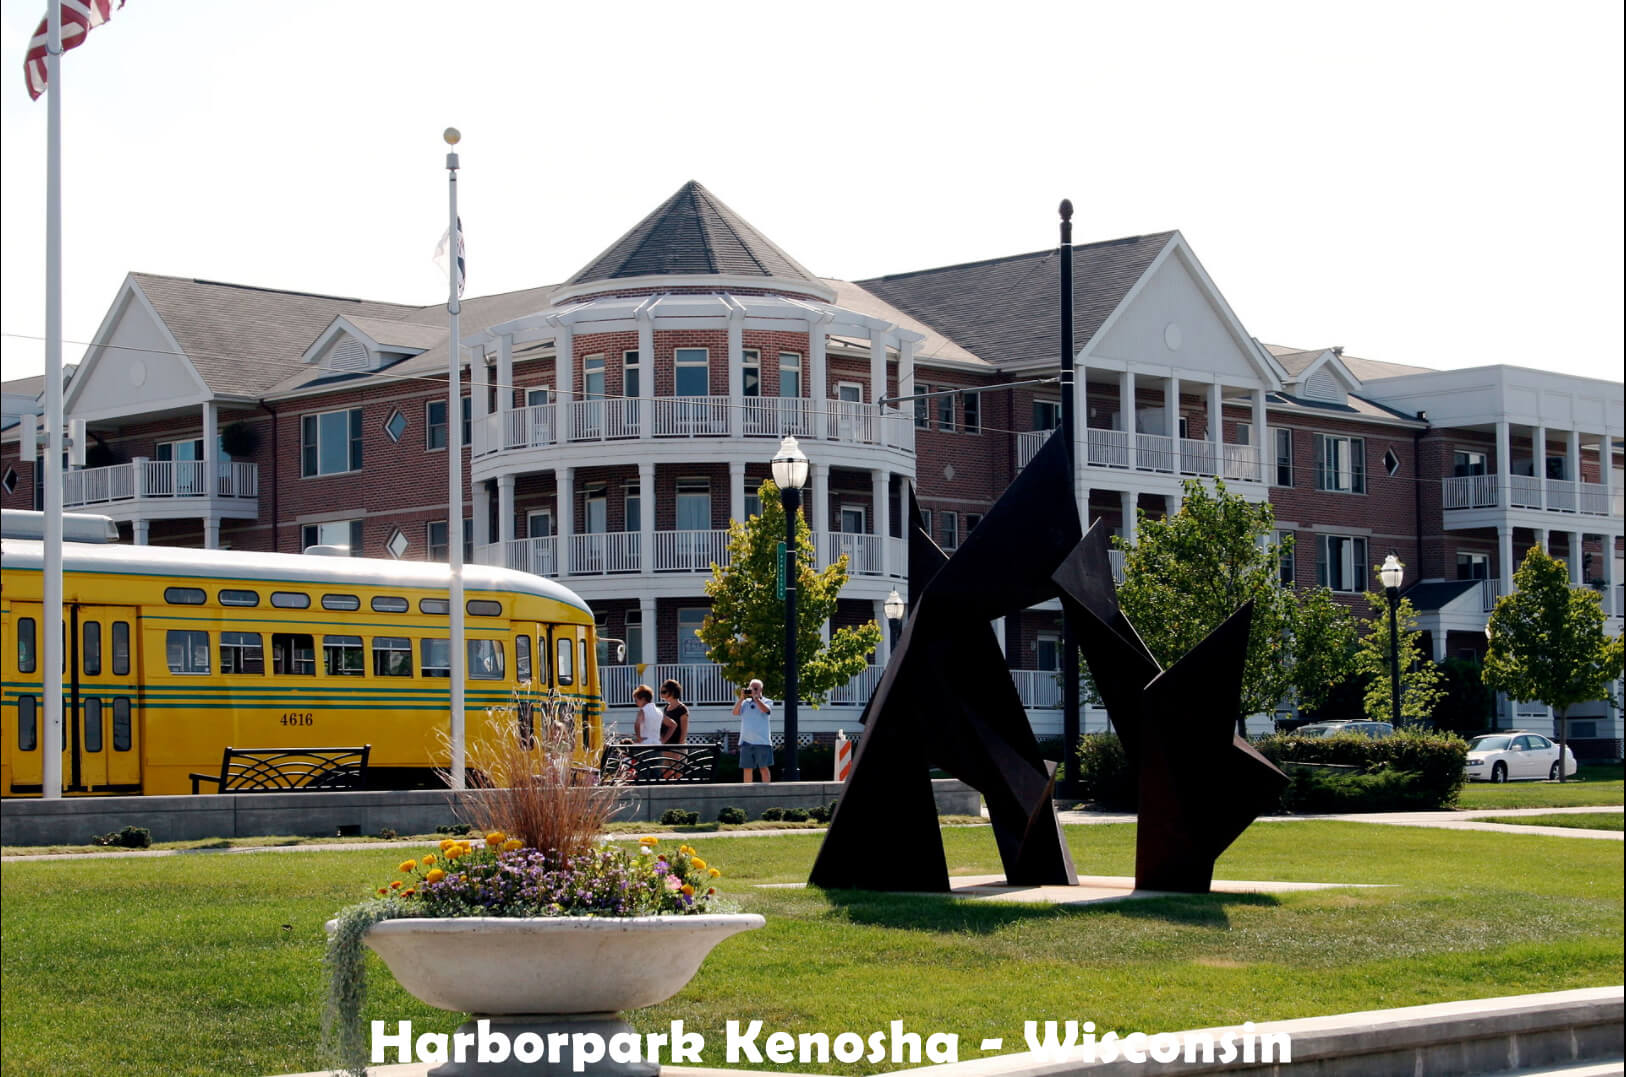 Harborpark Kenosha - Wisconsin